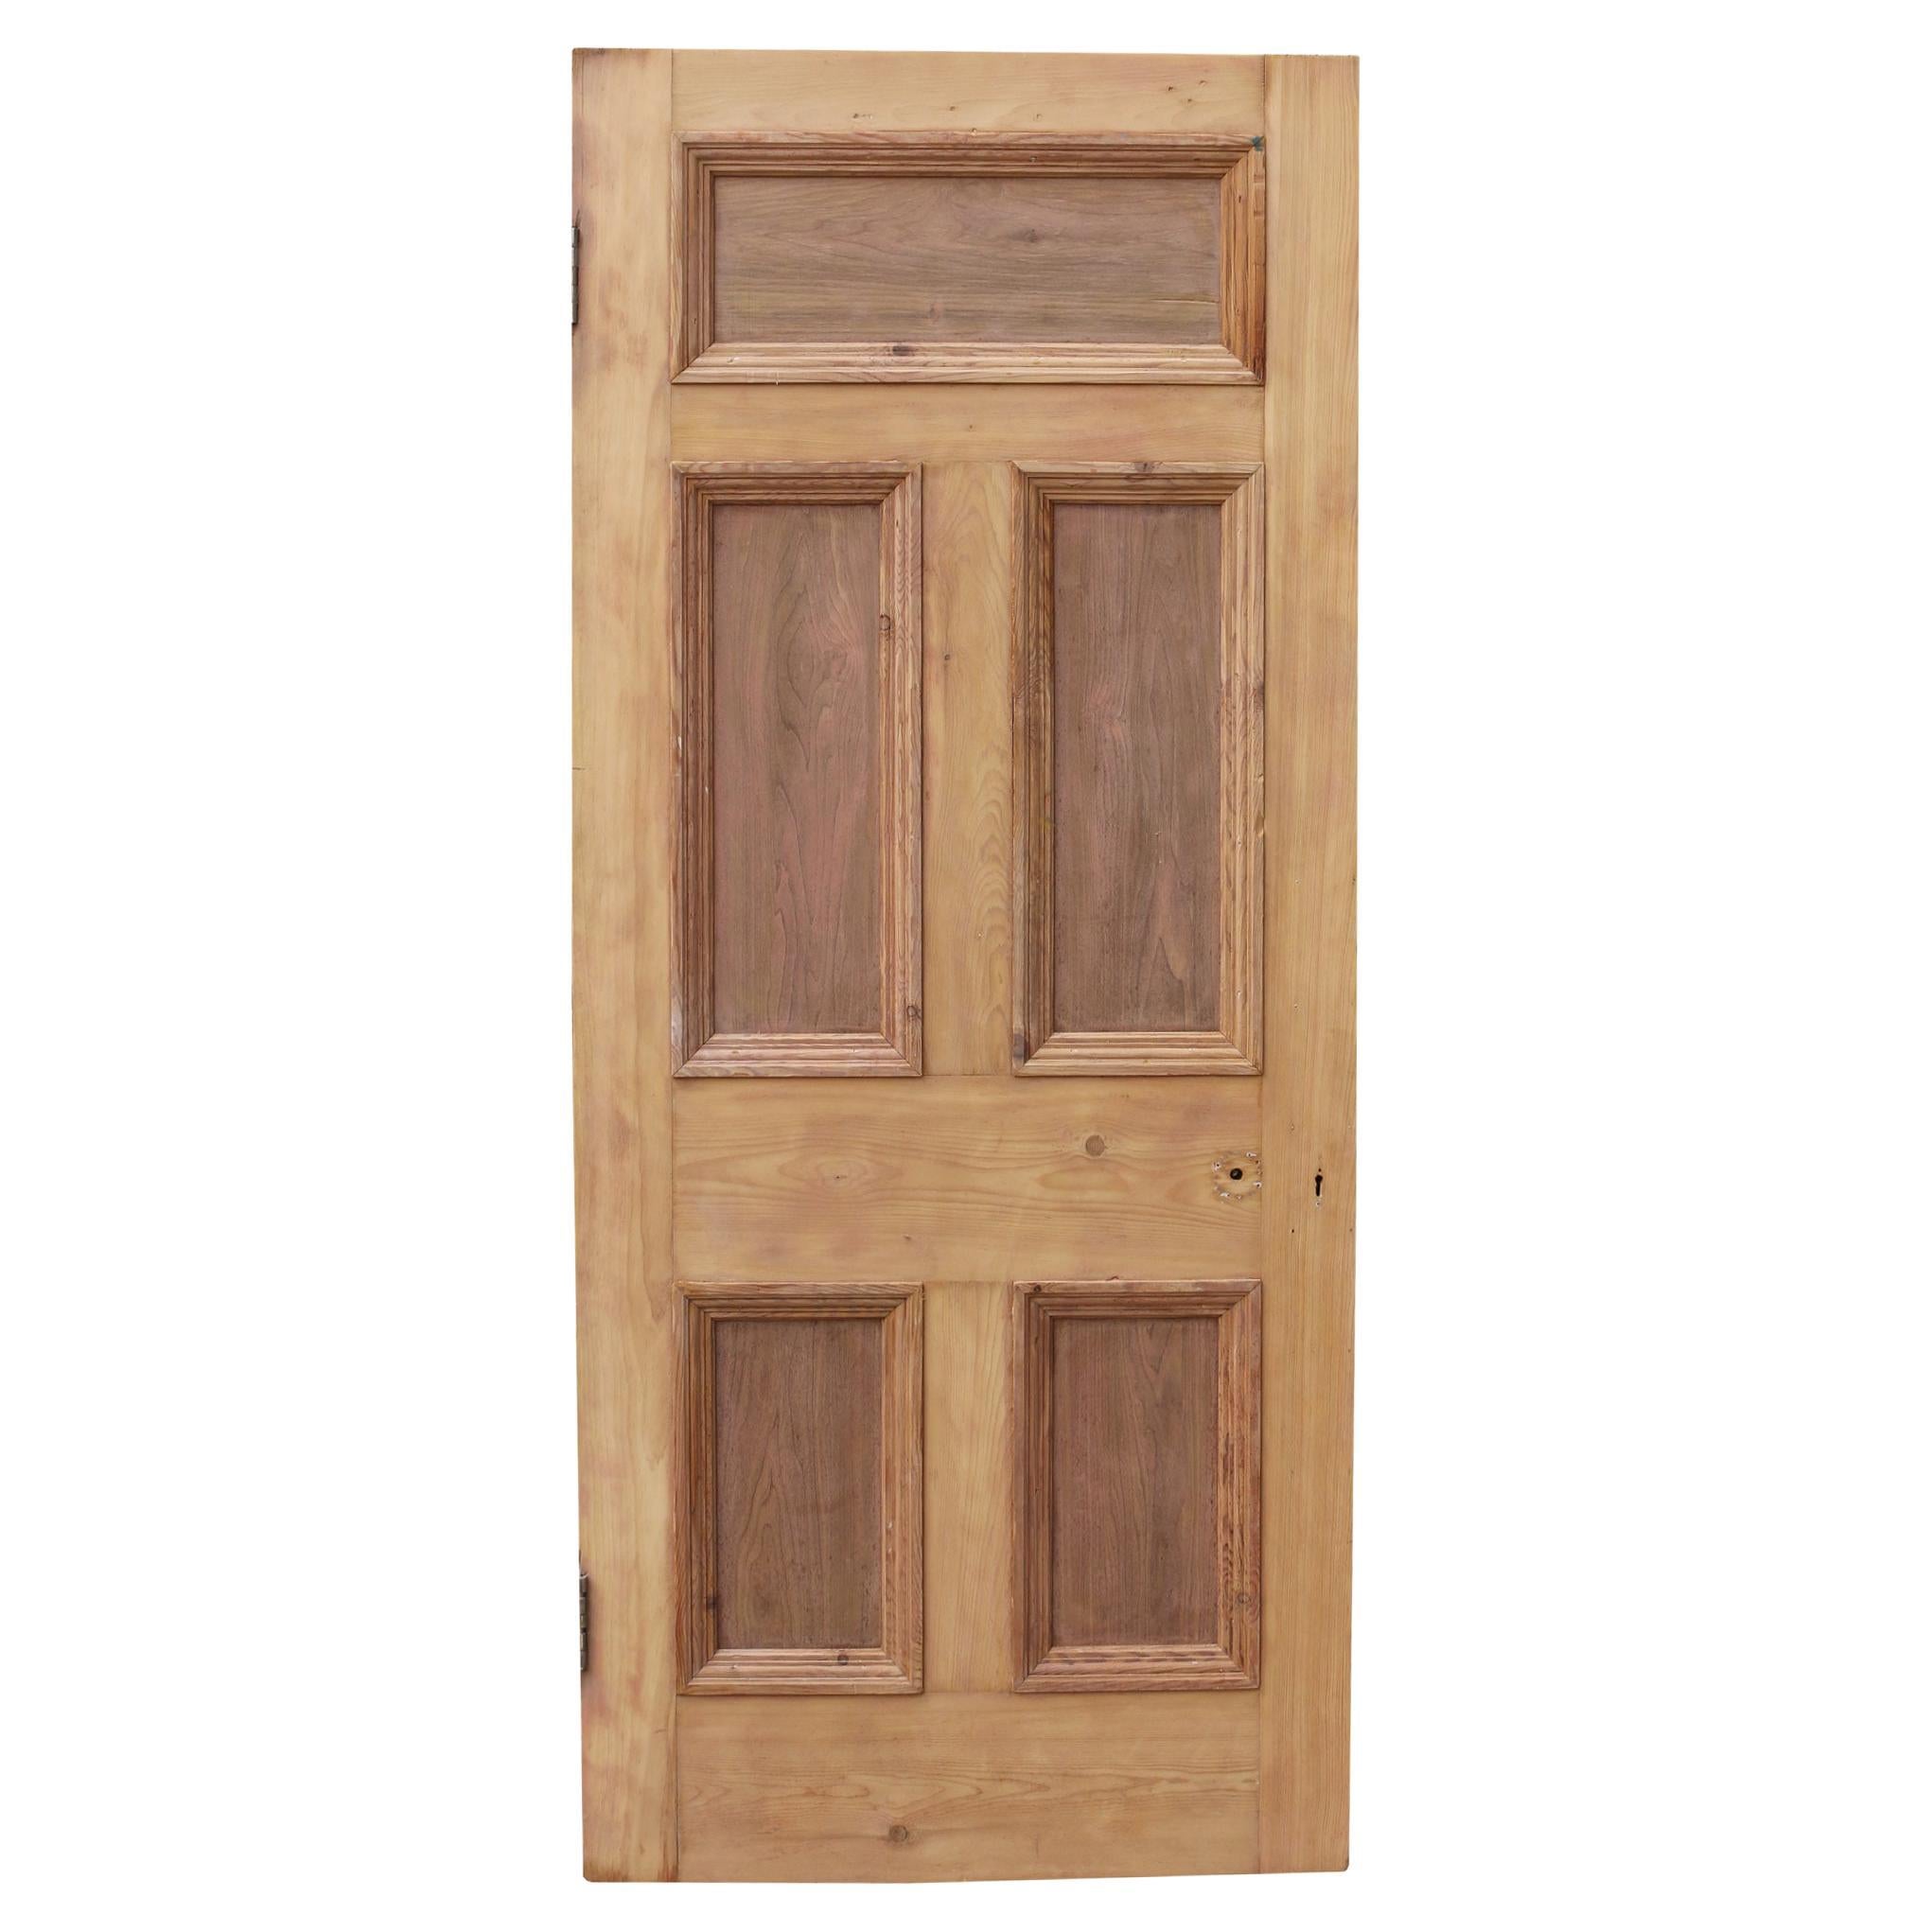 Antique Exterior Five Panel Pine Door